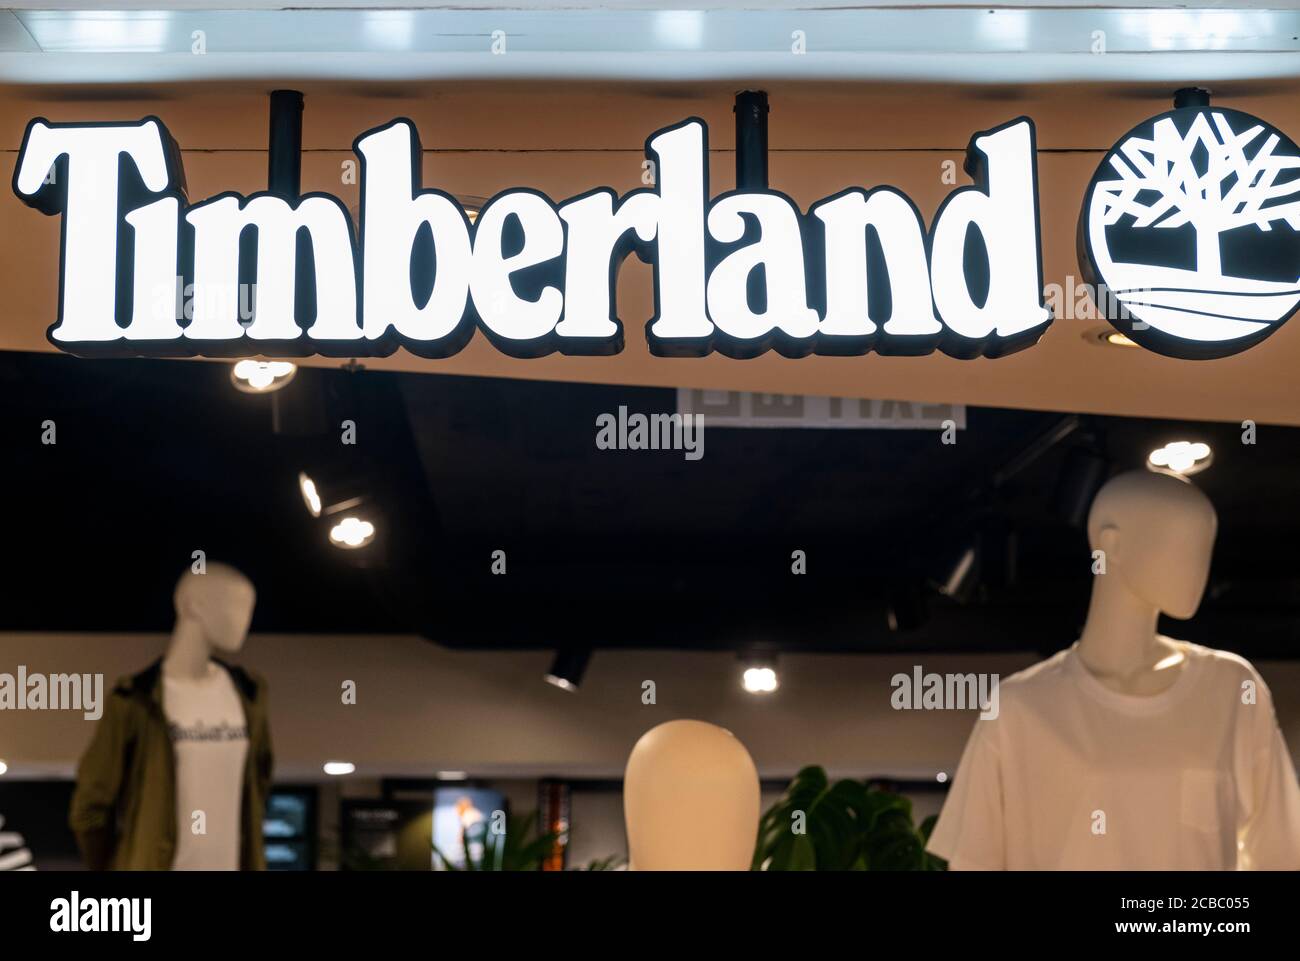 Marchio americano di abbigliamento e calzature marchio Timberland logo e  negozio visto a Hong Kong Foto stock - Alamy